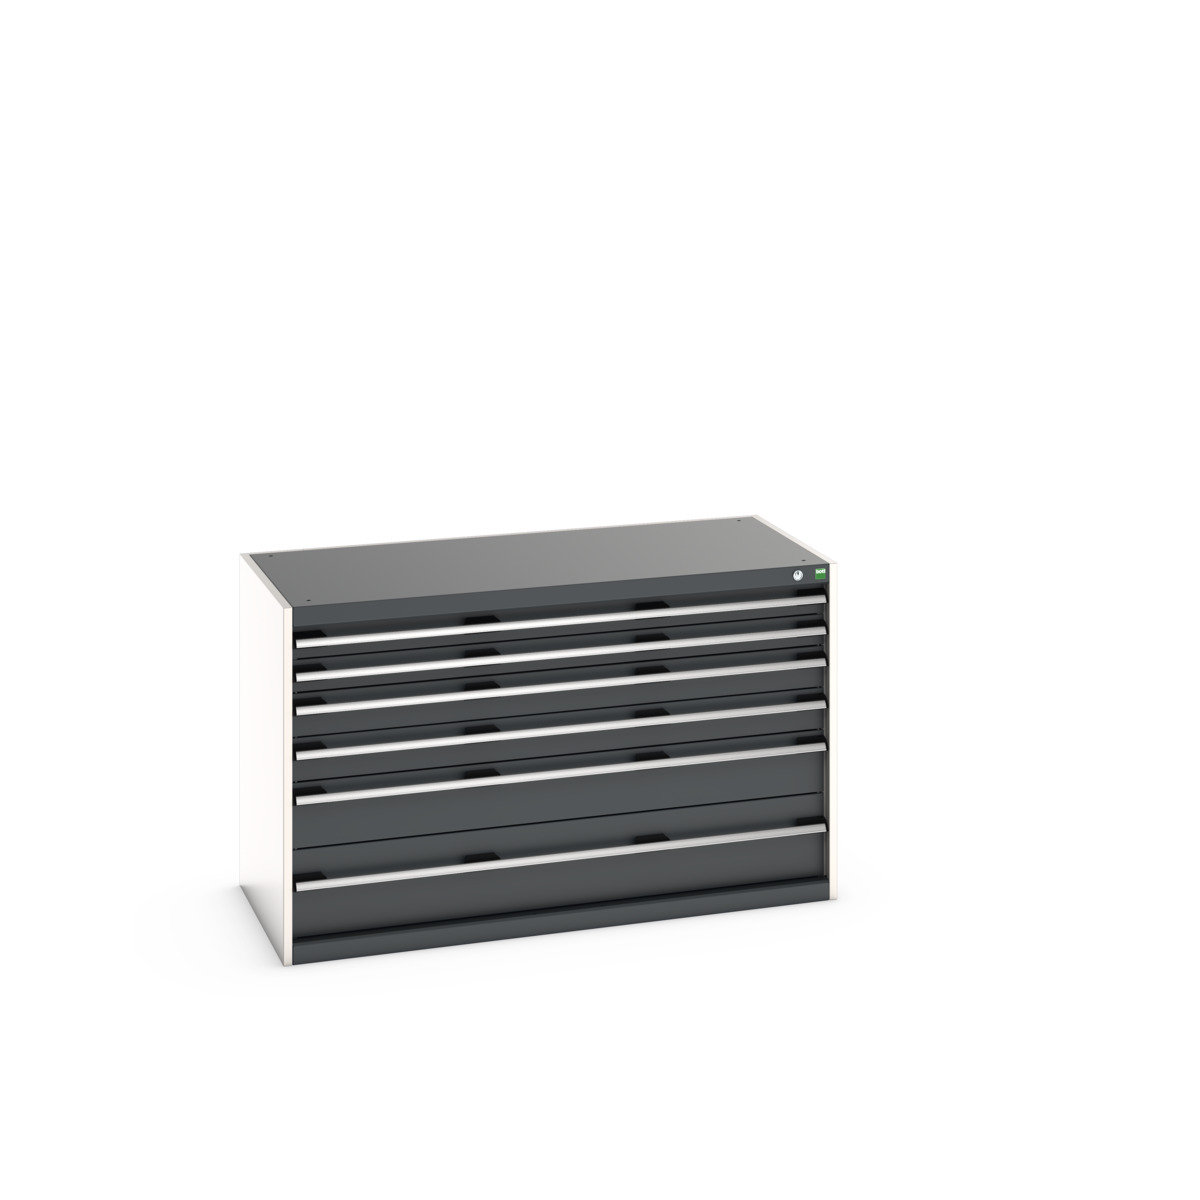 40022109.19V - cubio drawer cabinet